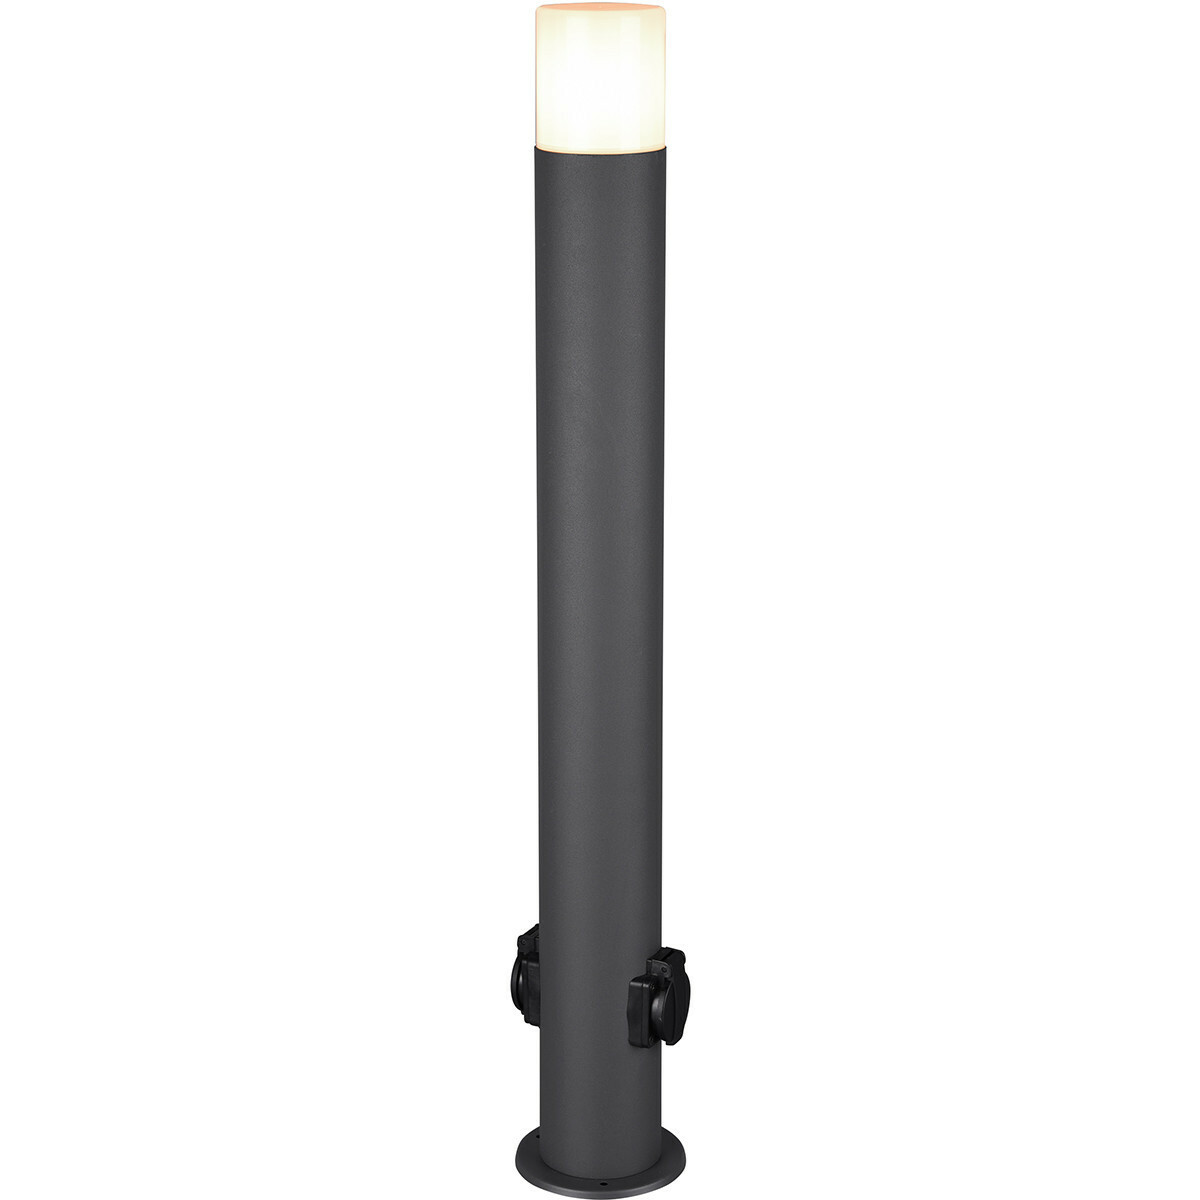 Verwaarlozing Cursus onderwijzen LED Tuinverlichting - Staand Buitenlamp met Stopcontact - Trion Hosina XL -  E27 Fitting - Spatwaterdicht IP44 - Mat Antraciet - Aluminium | BES LED